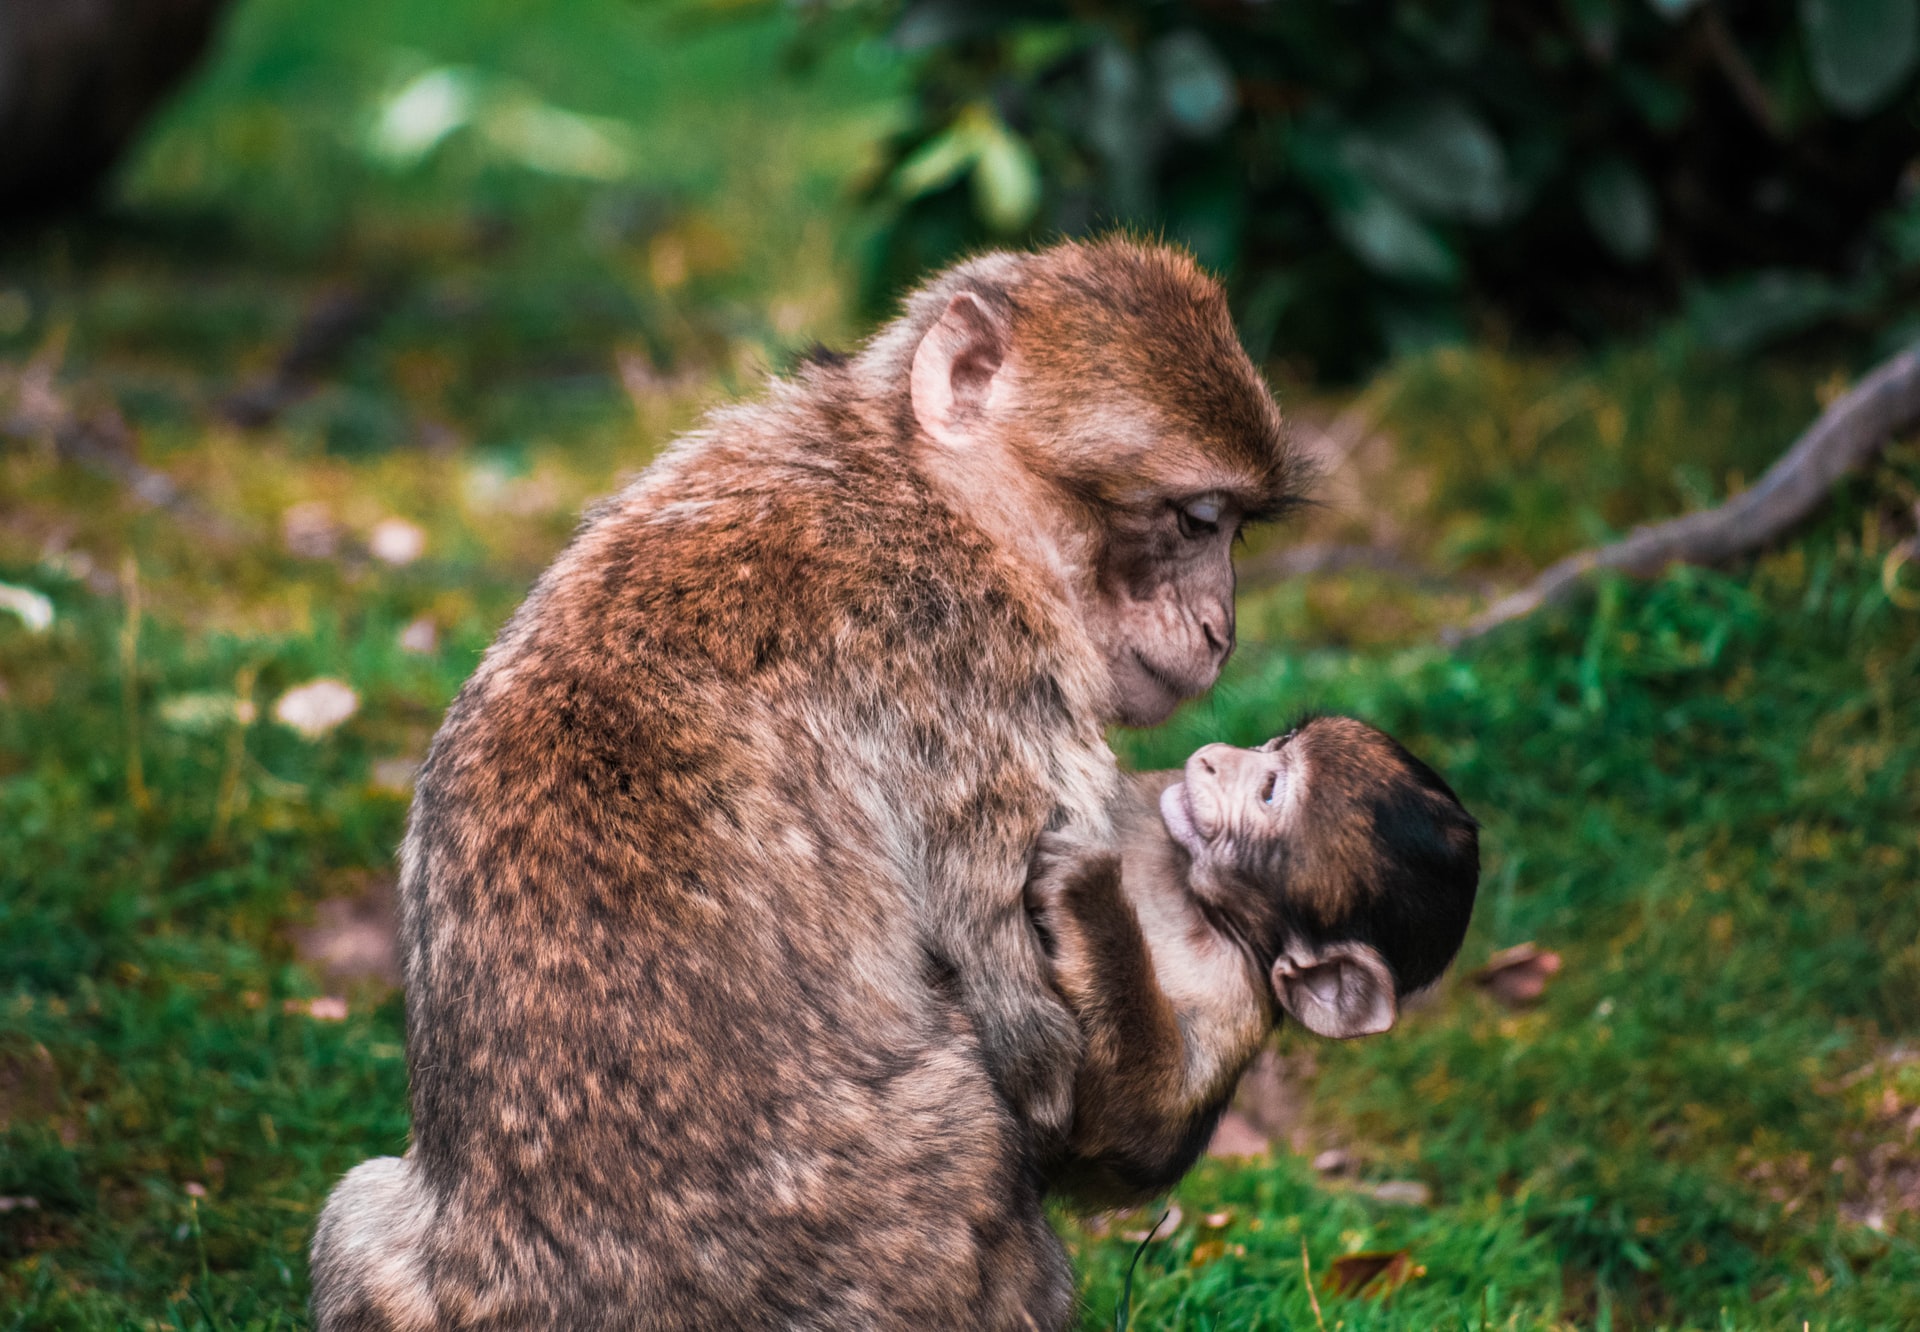 Mutter und Affenbaby von Lewis Roberts auf UNSPLASH - lizenzfrei